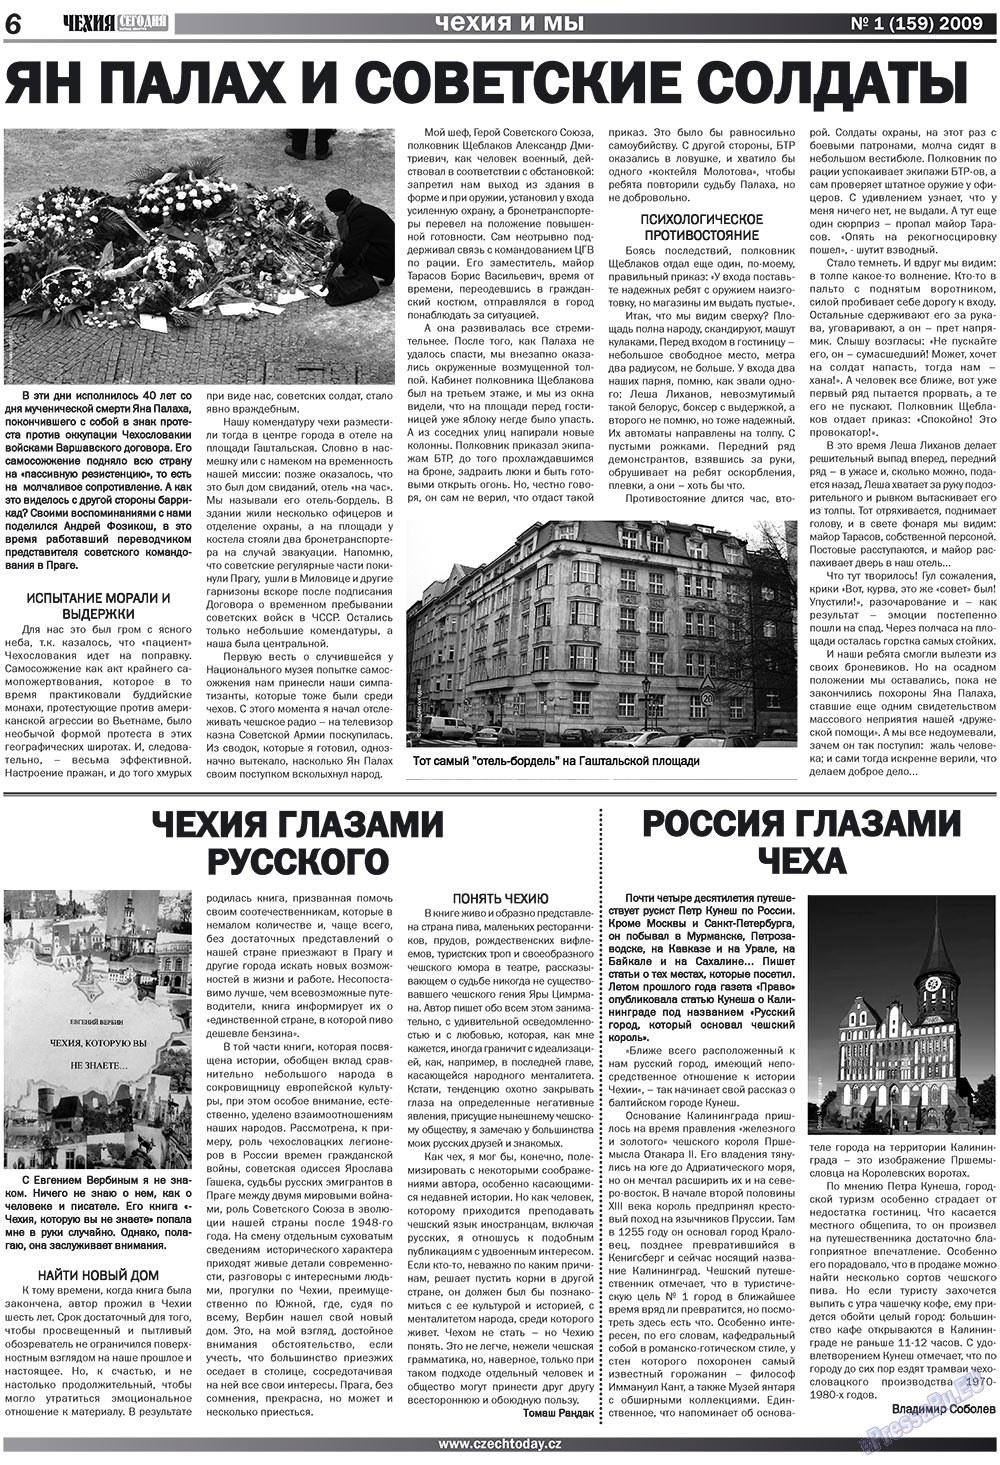 Чехия сегодня, журнал. 2009 №1 стр.6